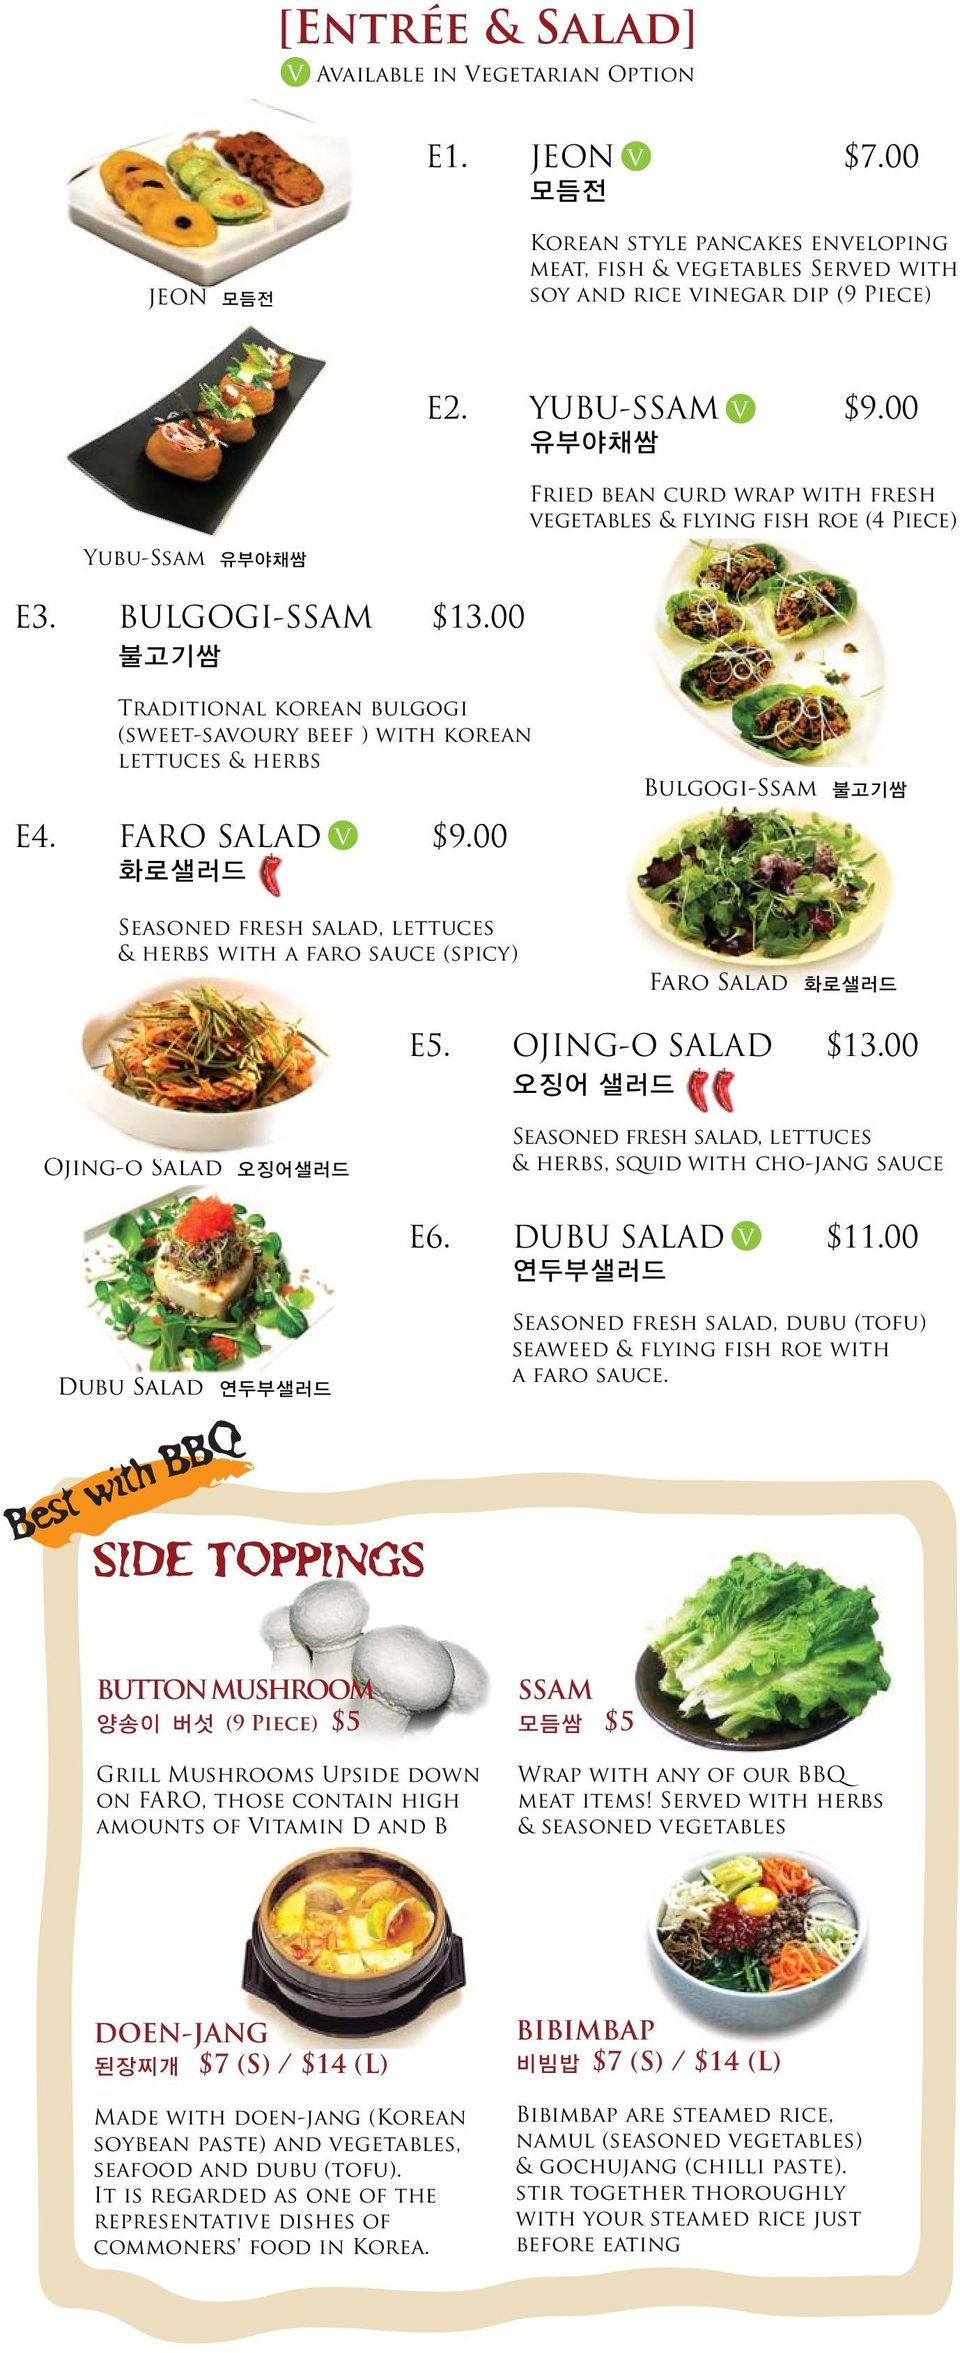 00 불고기쌈 Traditional korean bulgogi (sweet-savoury beef ) with korean lettuces & herbs E4. FARO SALAD v $9.